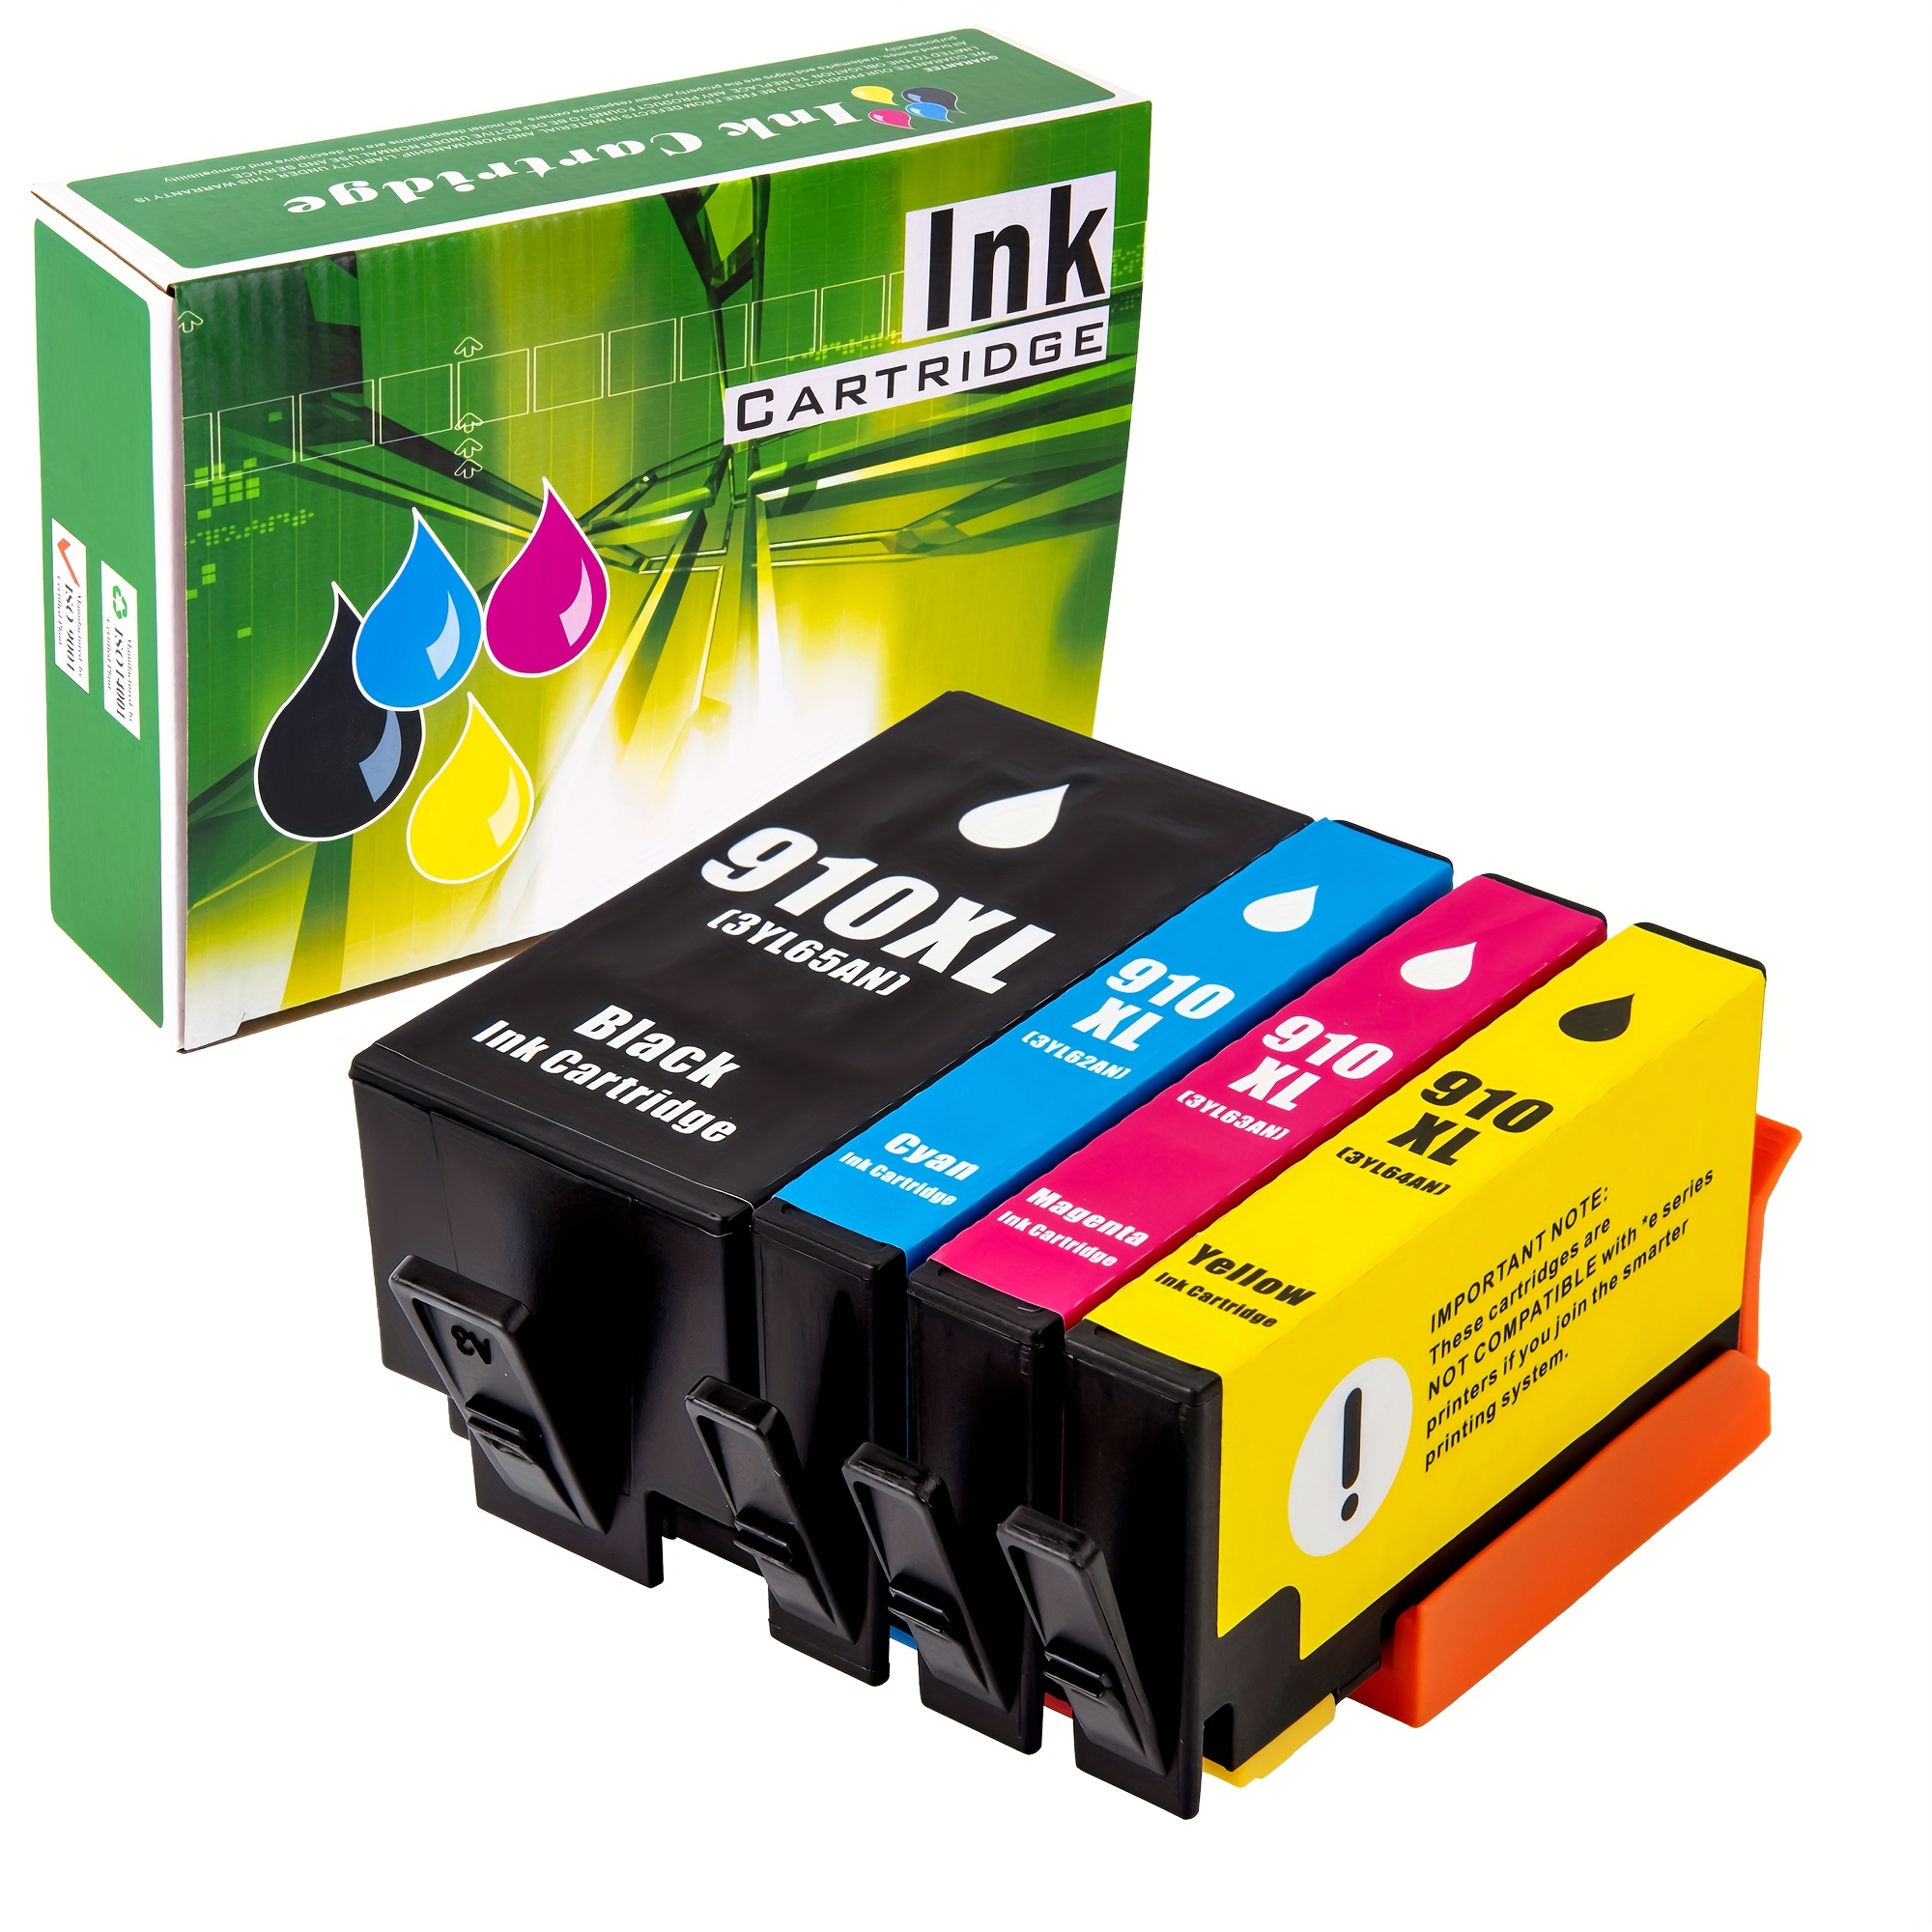 HP OfficeJet 8012 Ink Cartridges